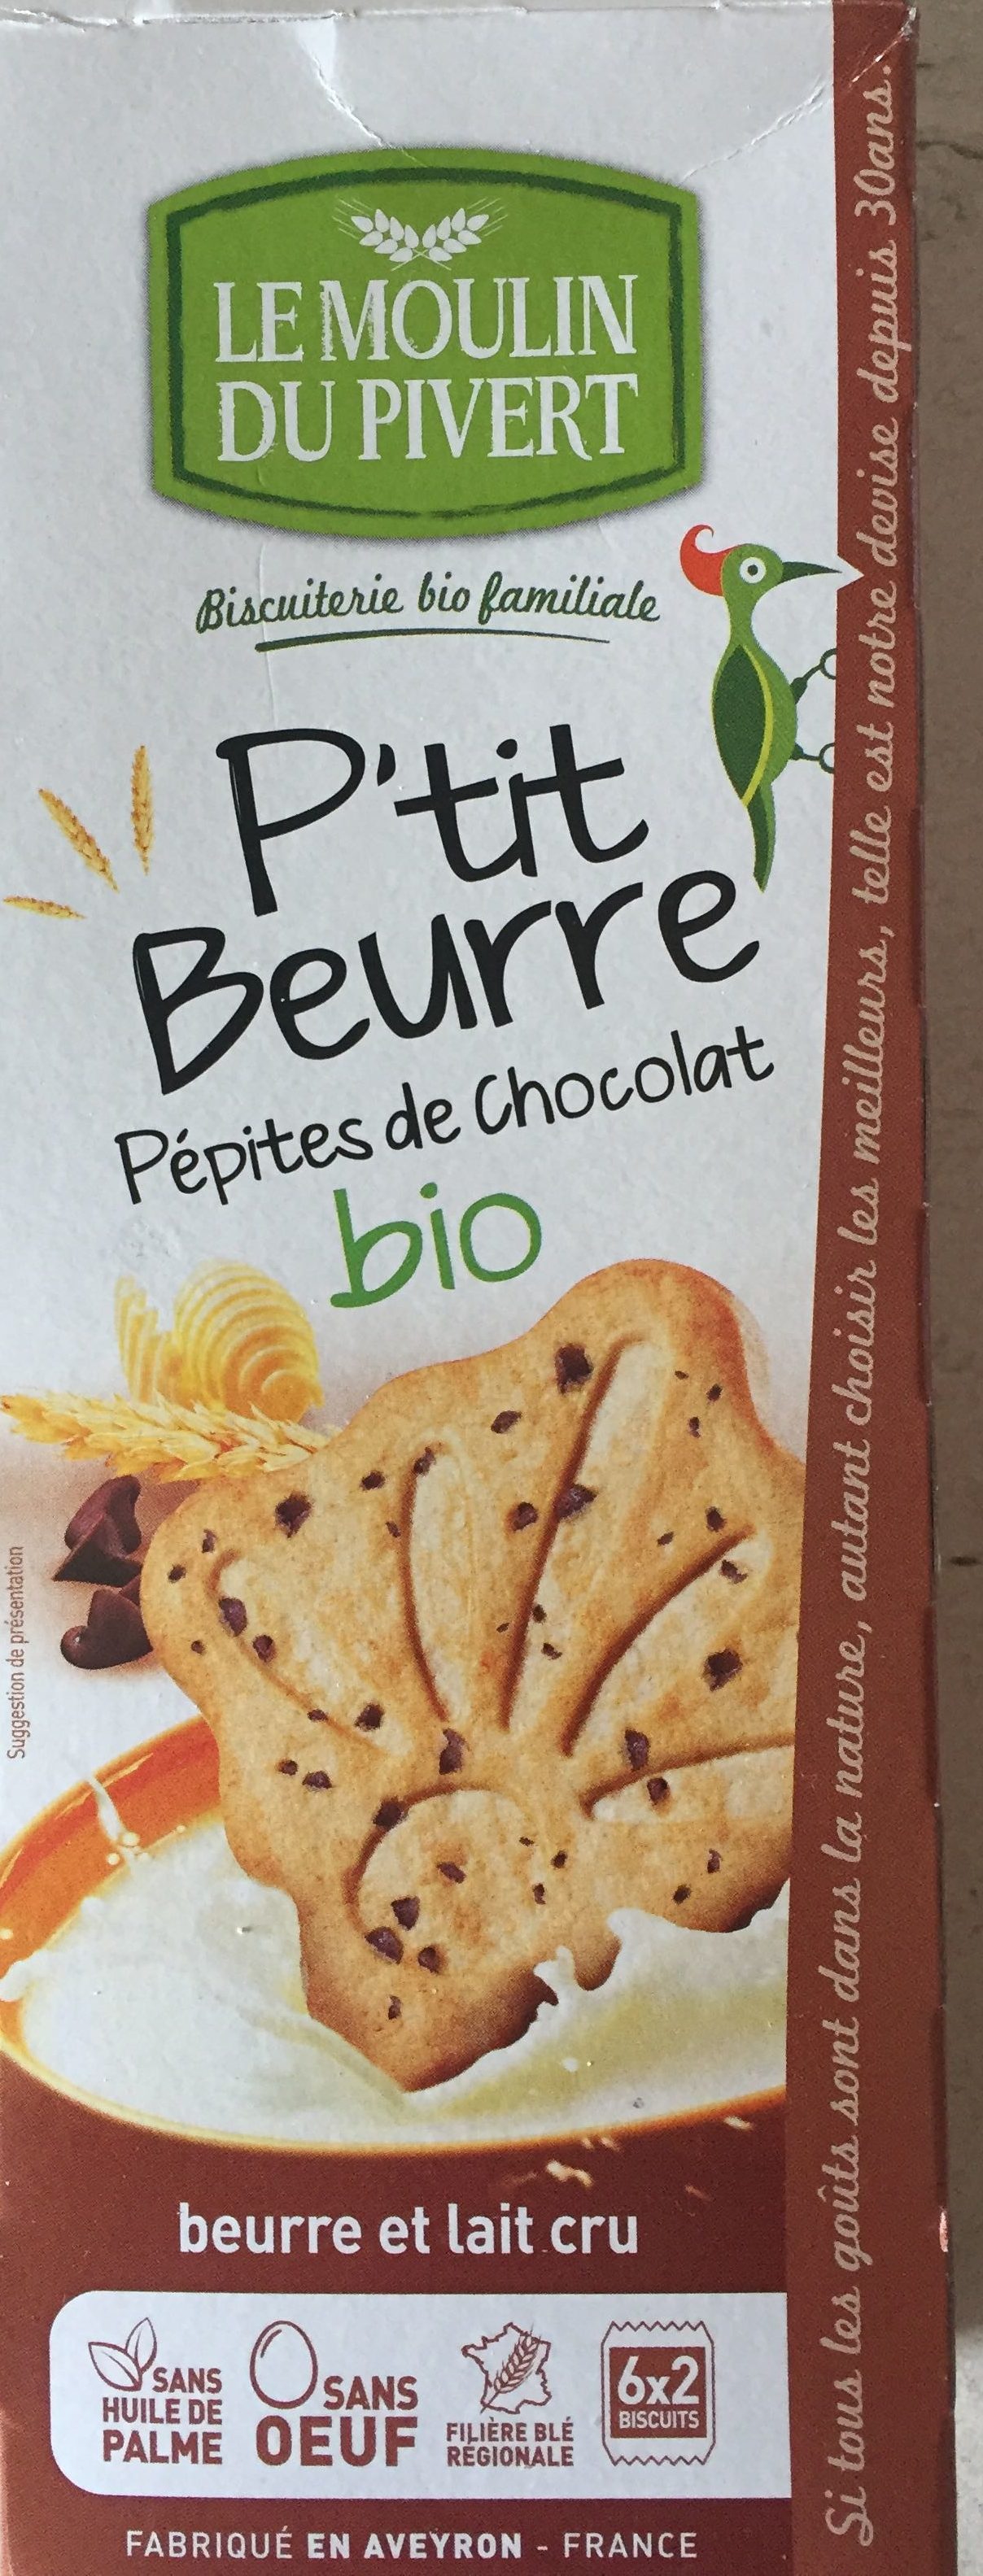 P’tit Beurre aux pépites de chocolat bio - Produit